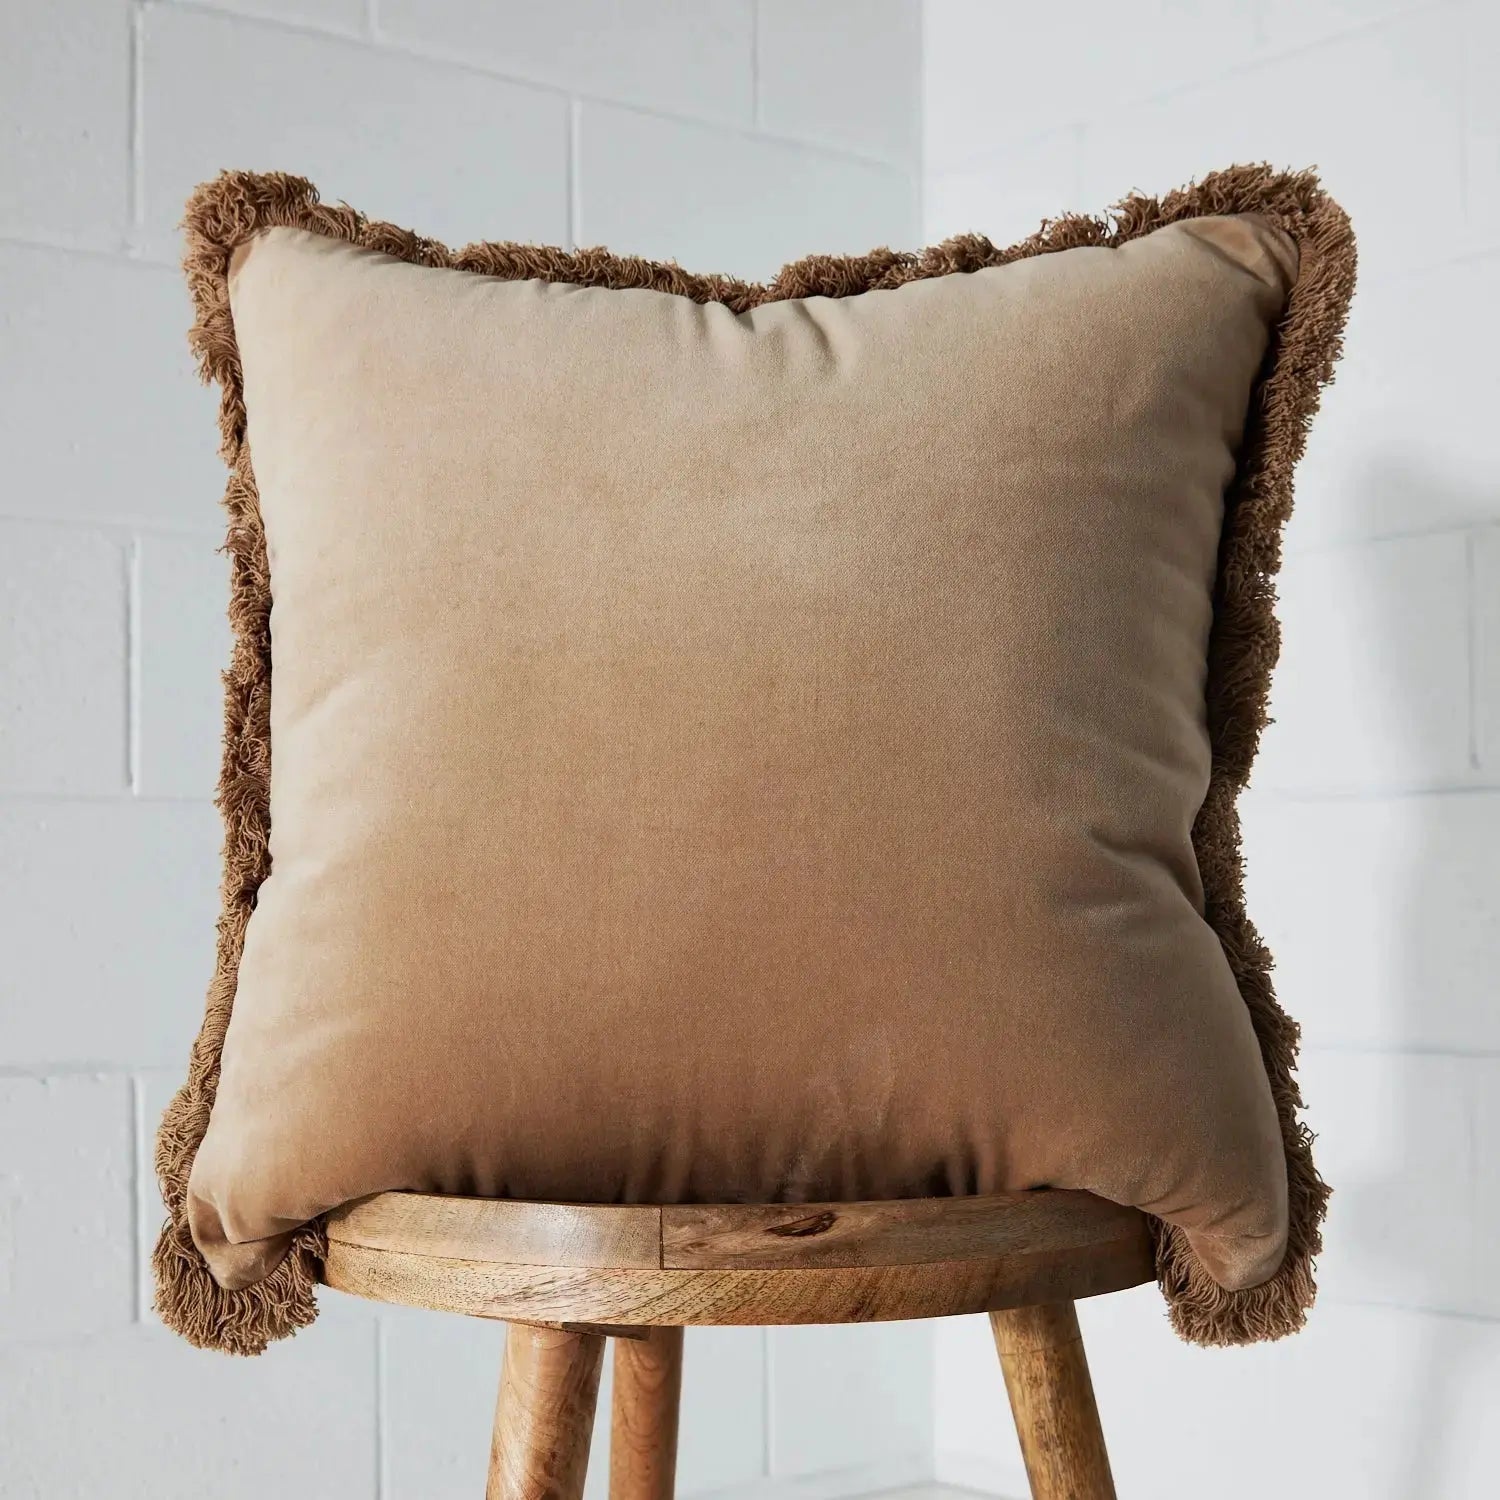 Oversized Fringed Velvet Cushion Navy - Cushion - Rugs a Million